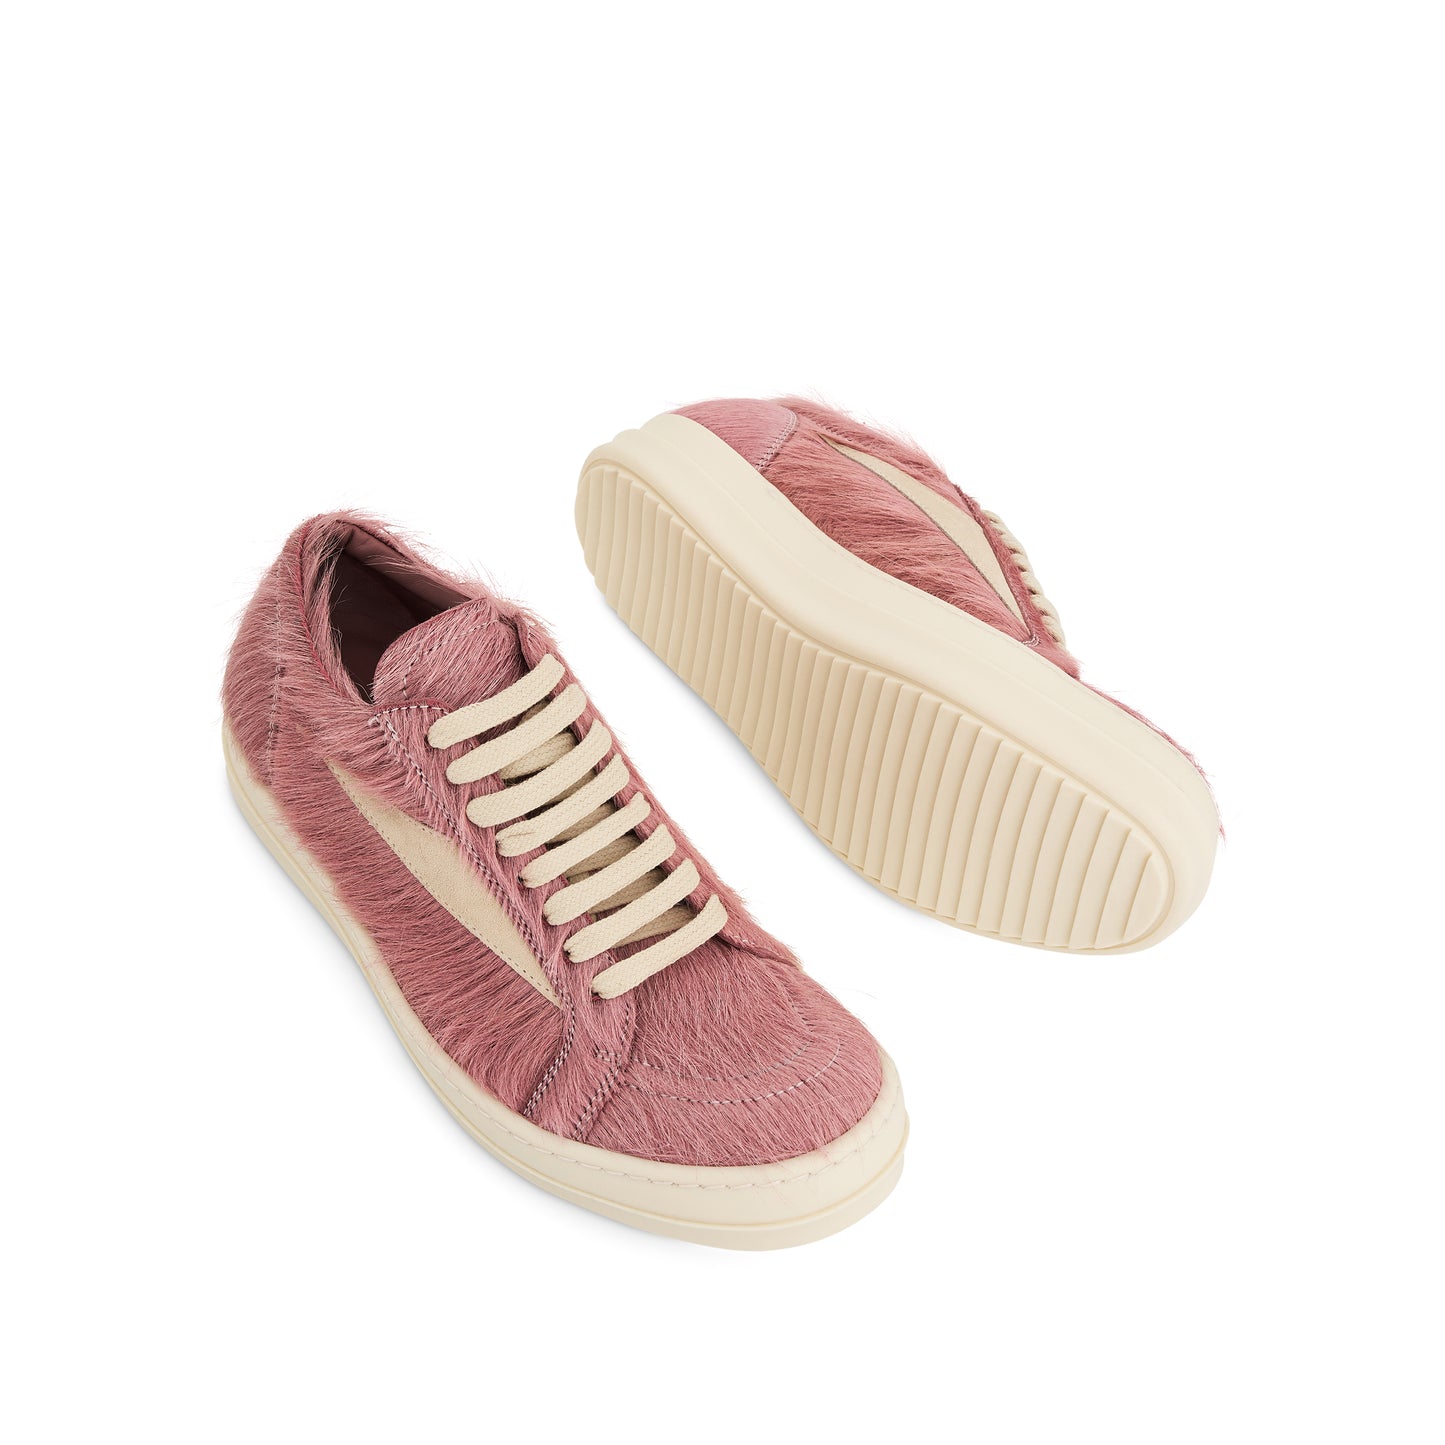 Vintage Fur Sneaker in Dusty Pink/Milk